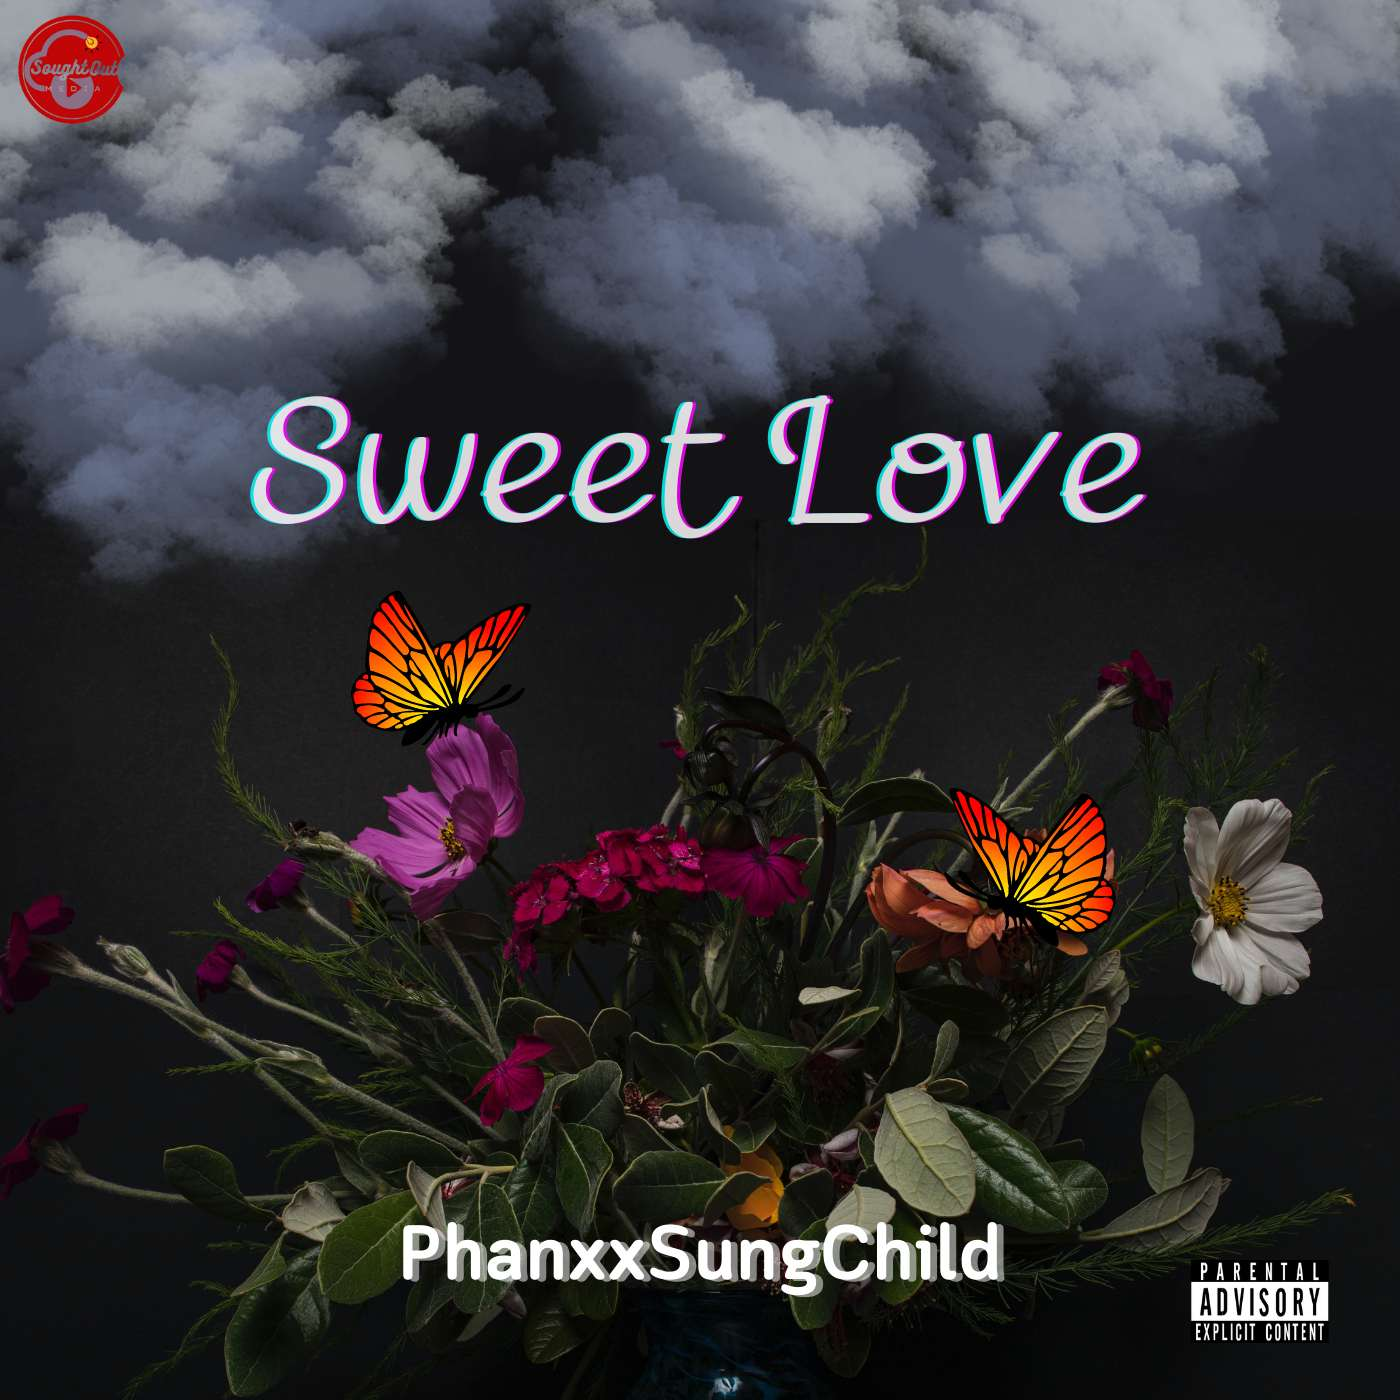 PhanxxSungChild - Sweet Love